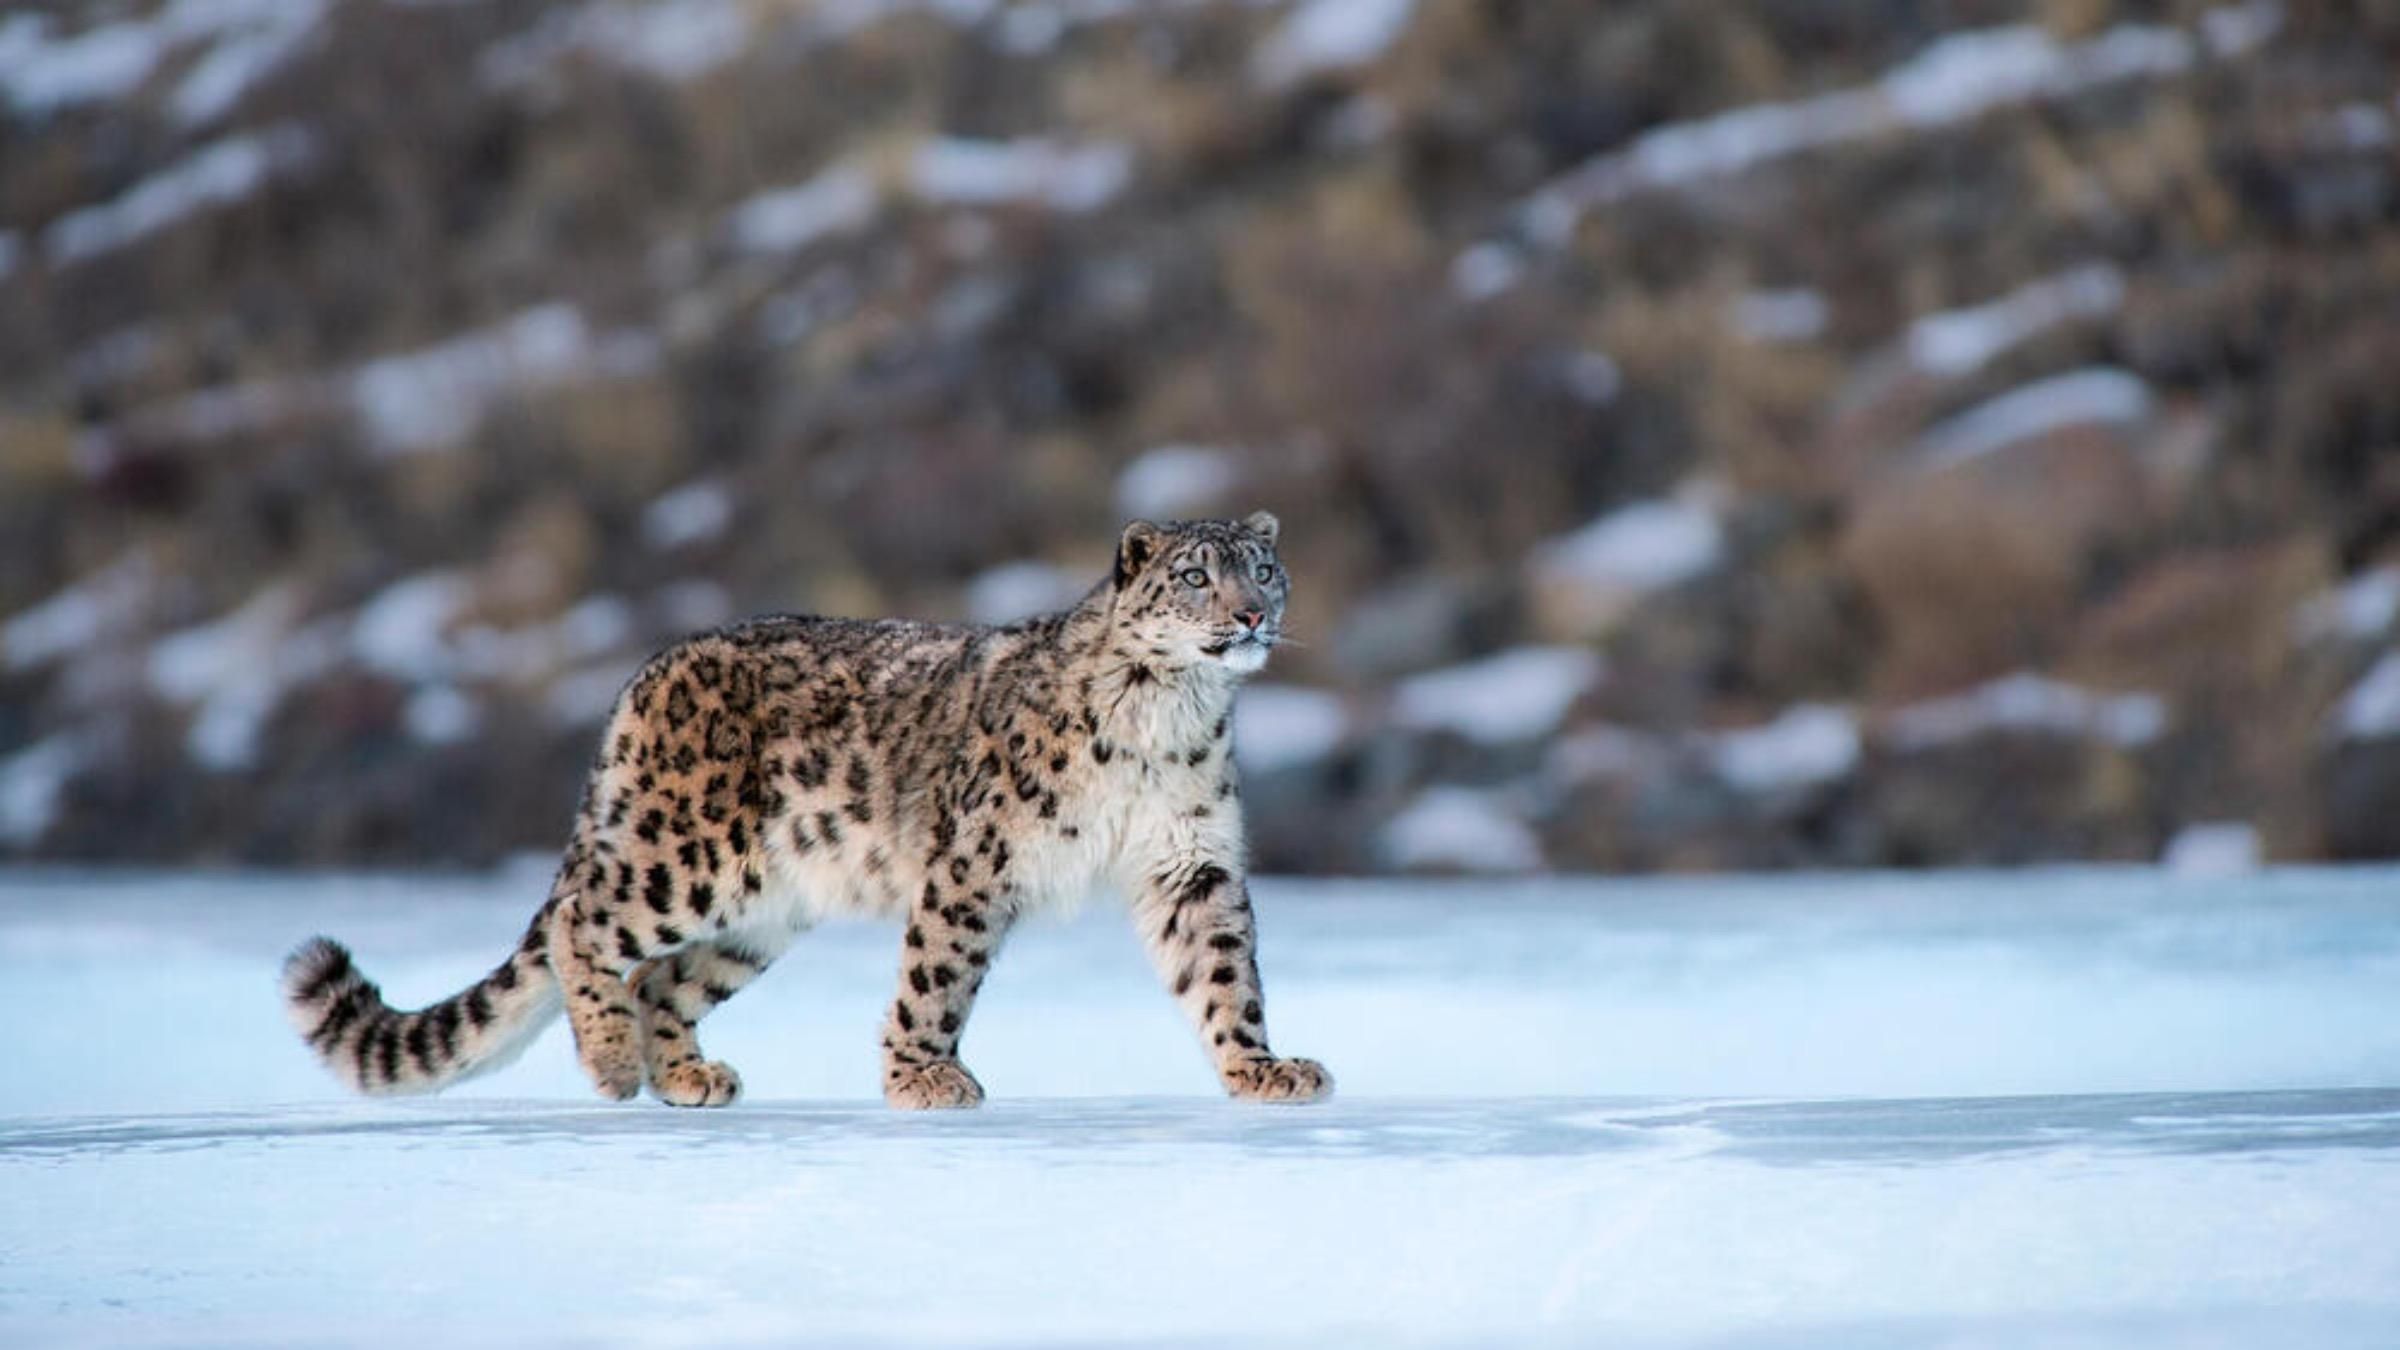 Самый неуловимый хищник: фотограф предложил найти на кадре снежного барса - Pets